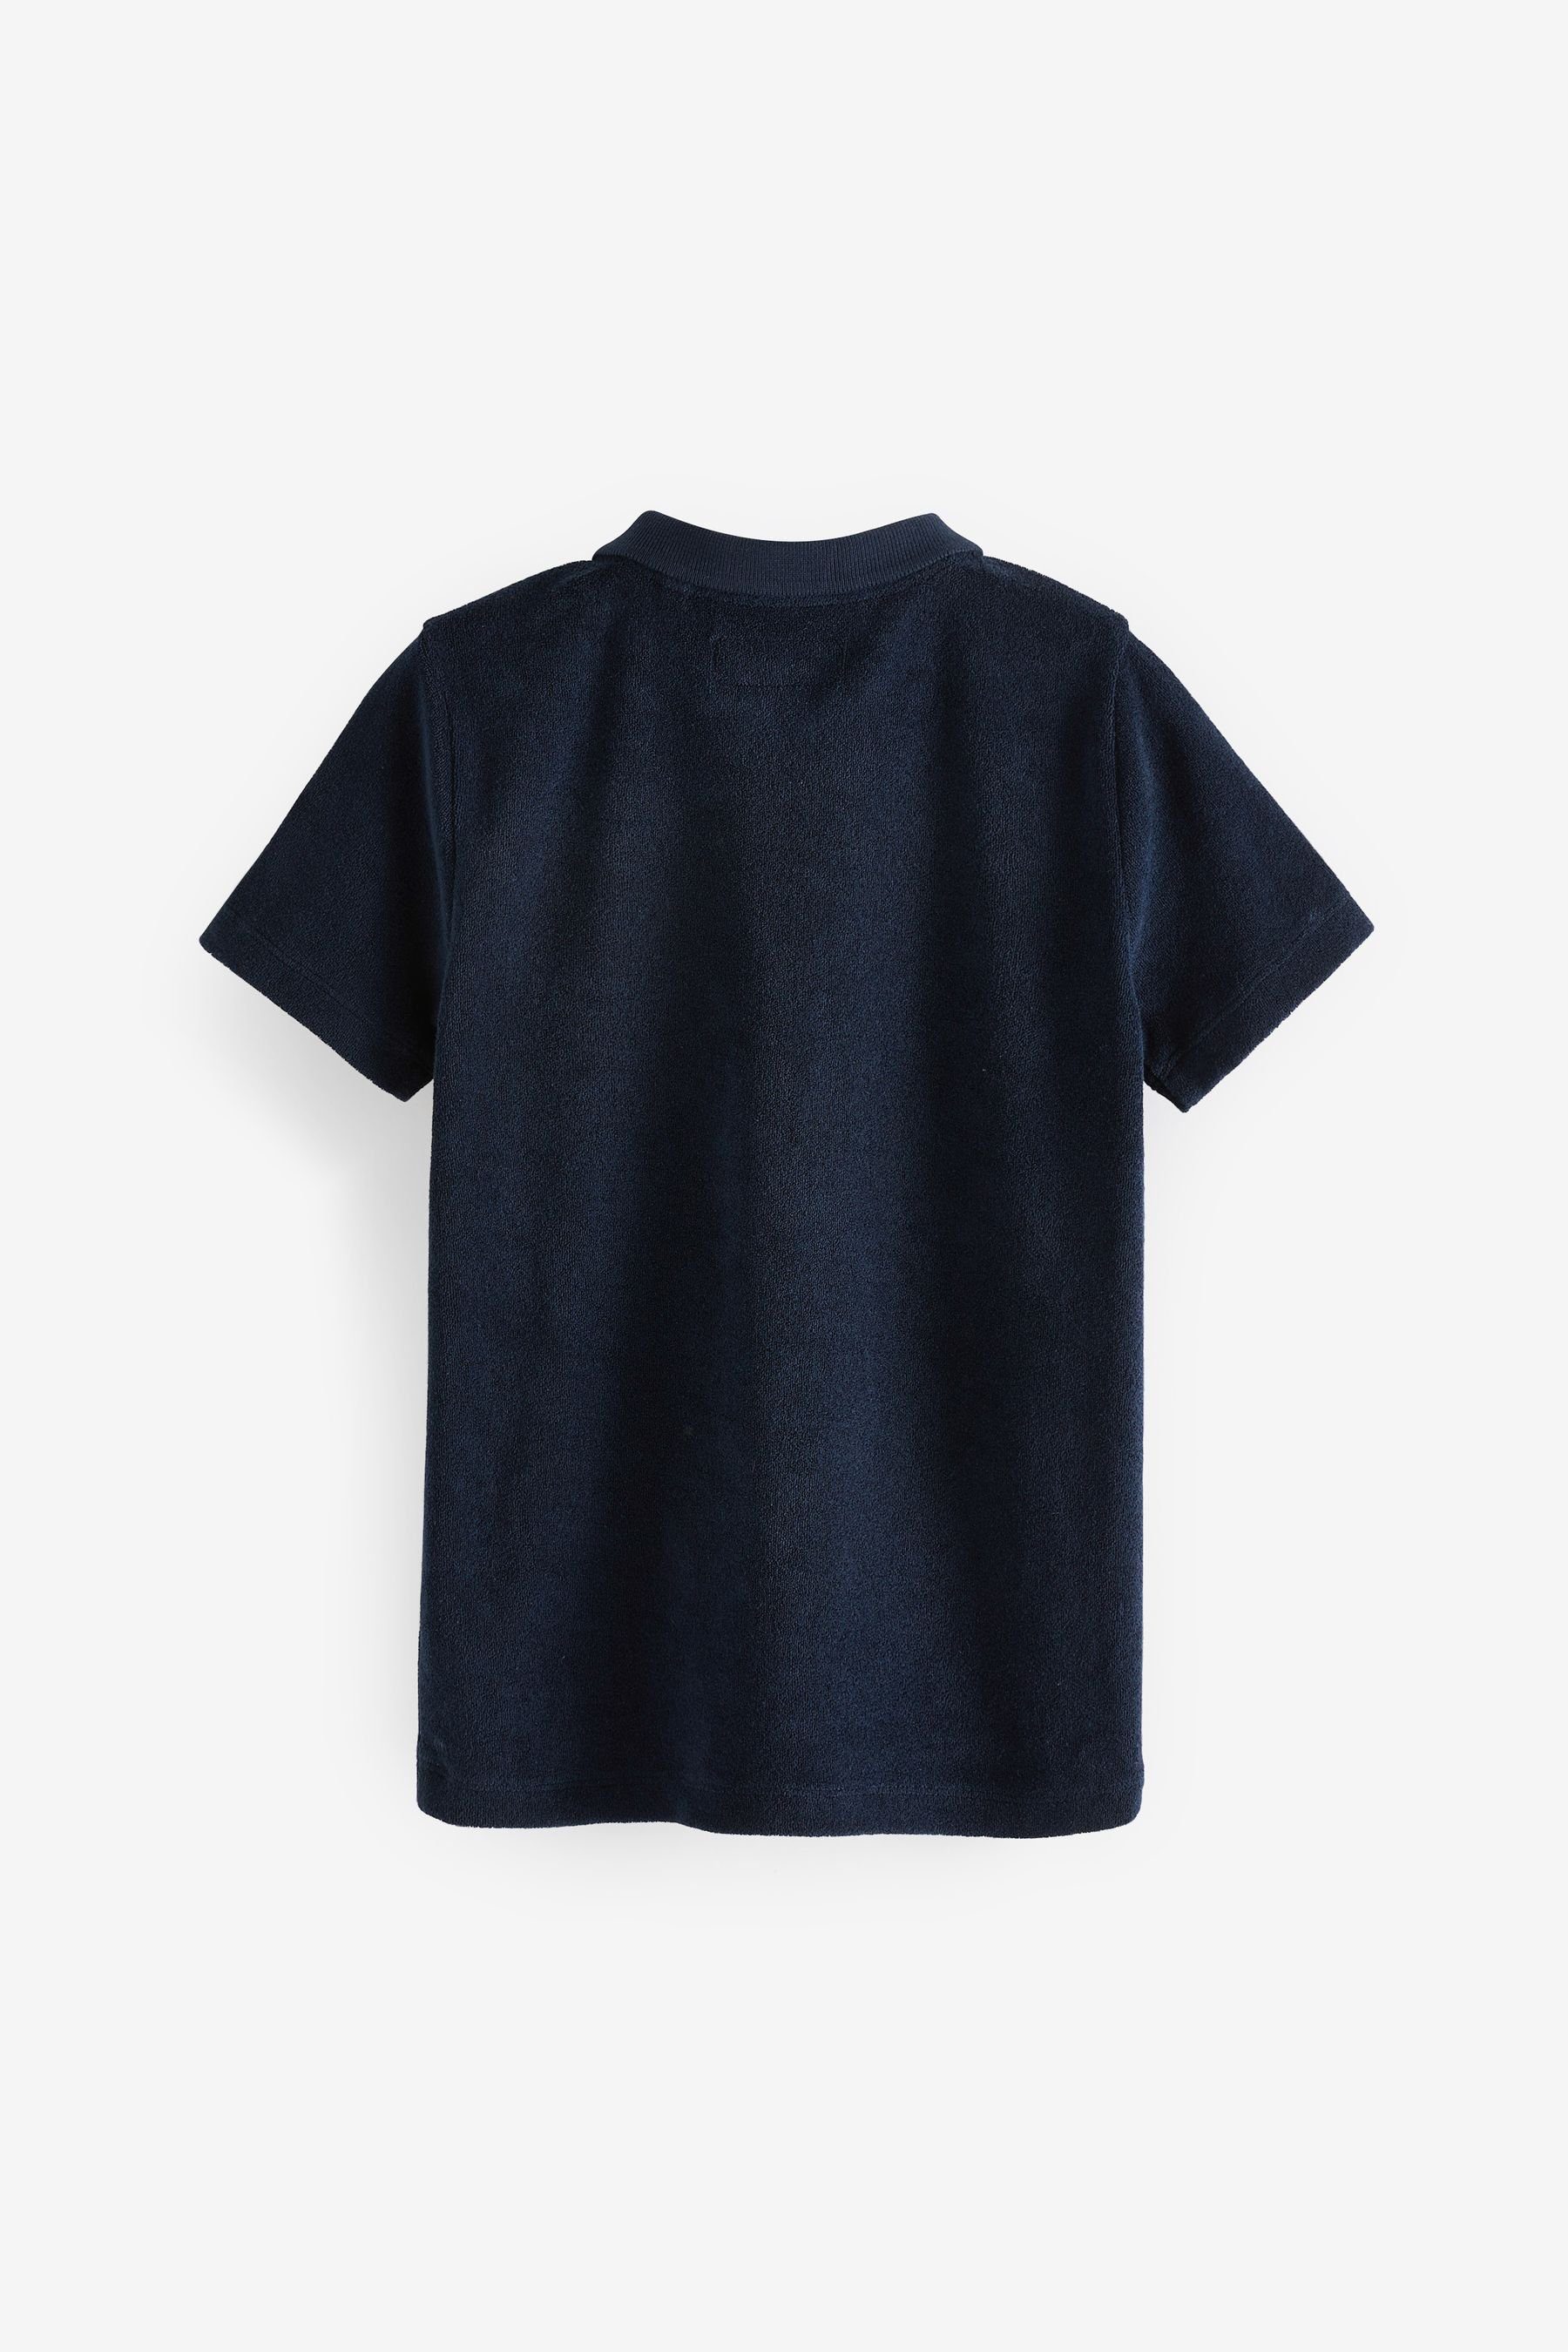 Kinder Shirts Next Poloshirt Kurzärmeliges Frottee-Polohemd mit Reißverschluss